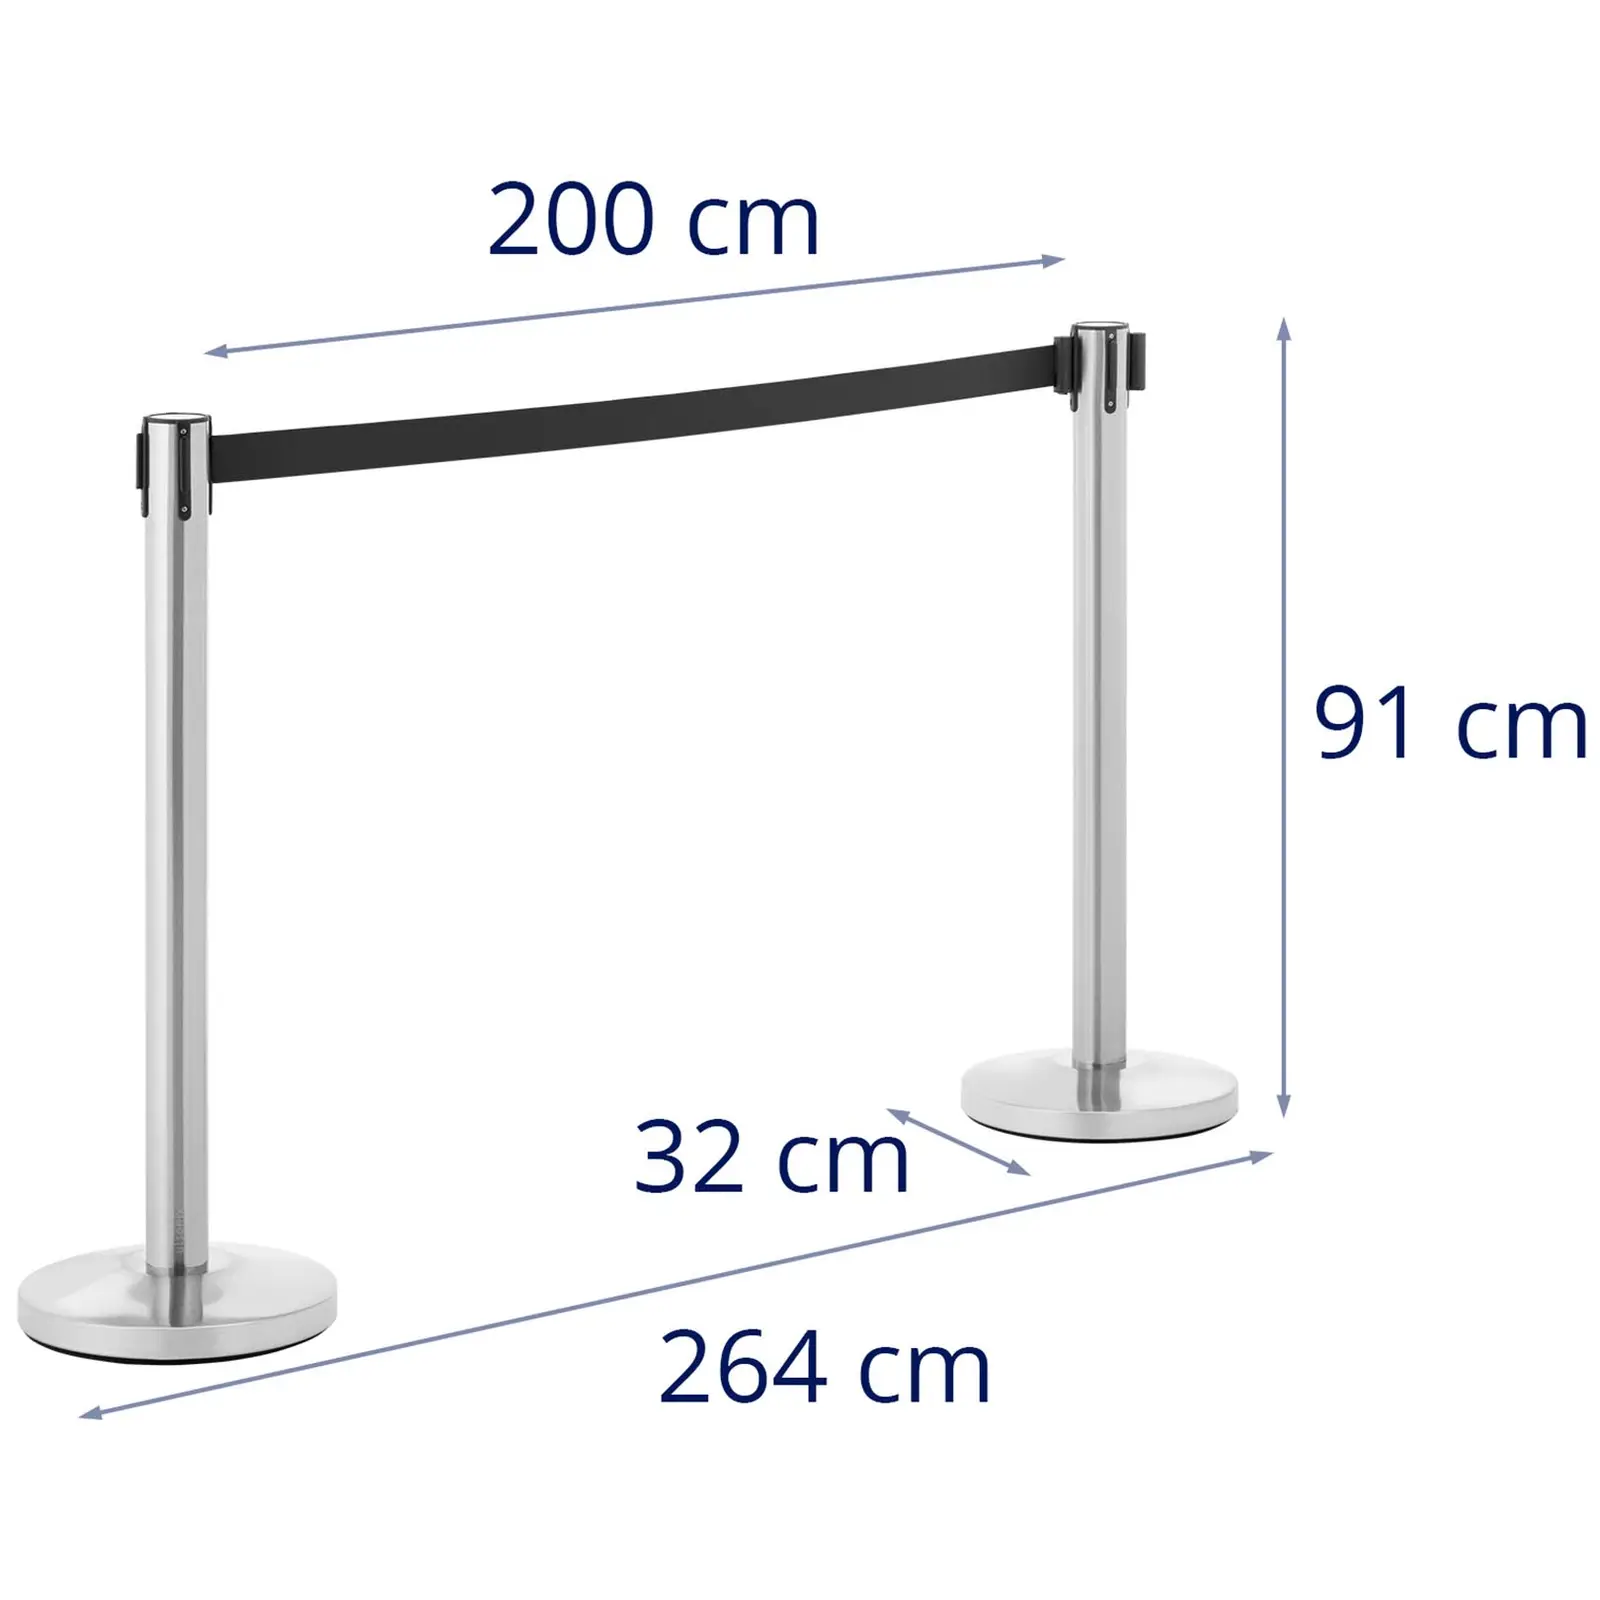 2 postes separadores com fita - 200 cm - aço inoxidável polido